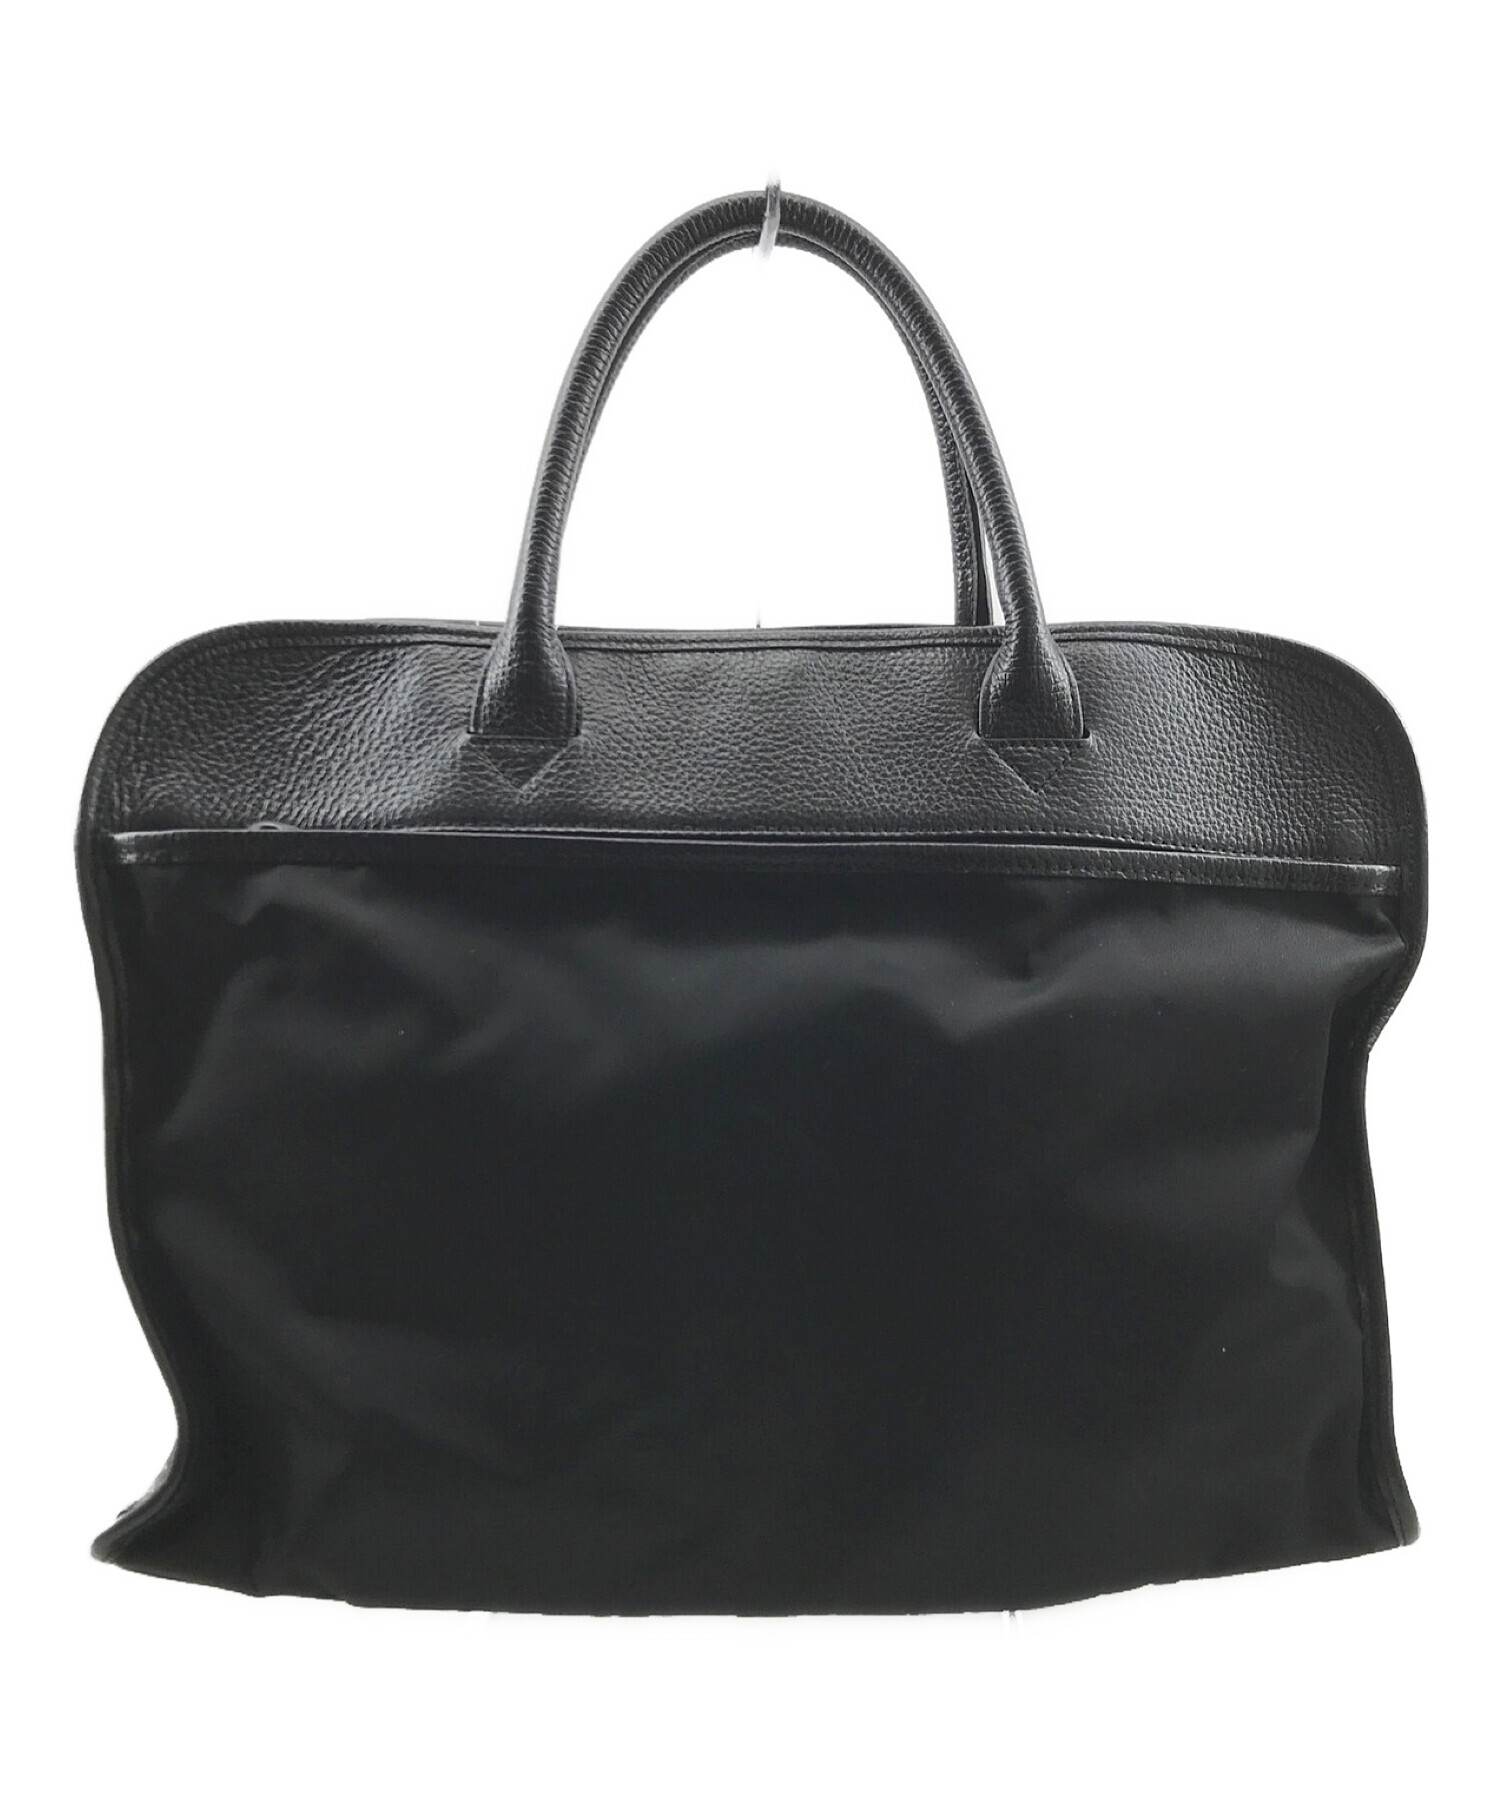 オロビアンコ／orobianco バッグ ブリーフケース ビジネスバッグ 鞄 ビジネス メンズ 男性 男性用ナイロン レザー 革 本革 ブラック 黒  RUFUS TREDI 10-D ルーファス